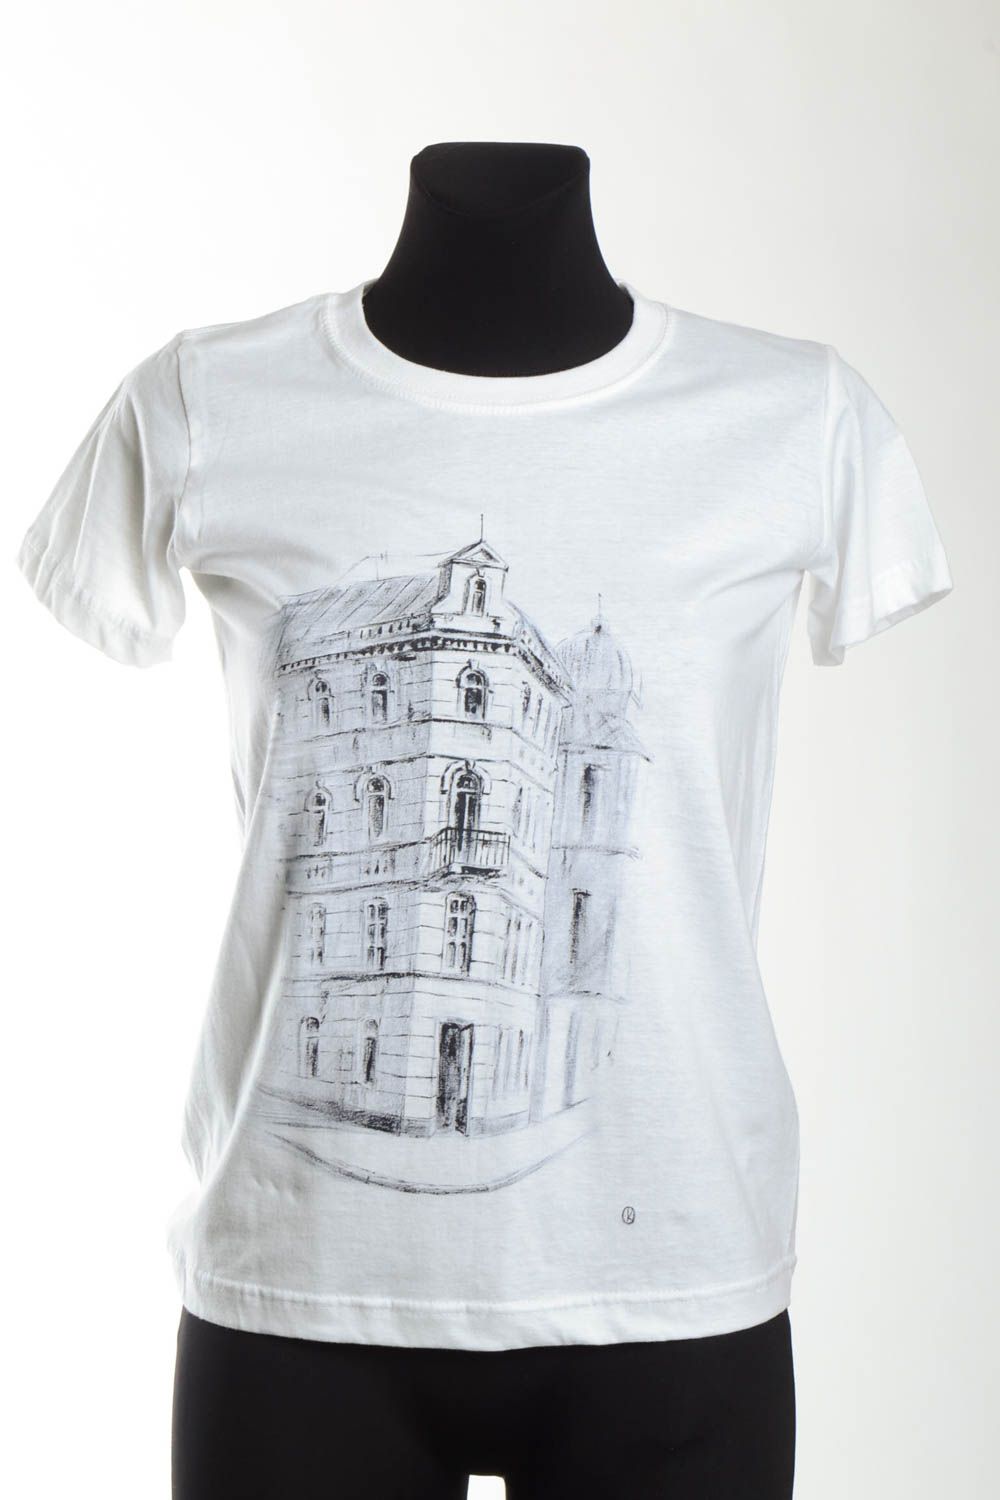 Camiseta de algodón blanca hecha a mano ropa de moda regalo para mujer foto 2